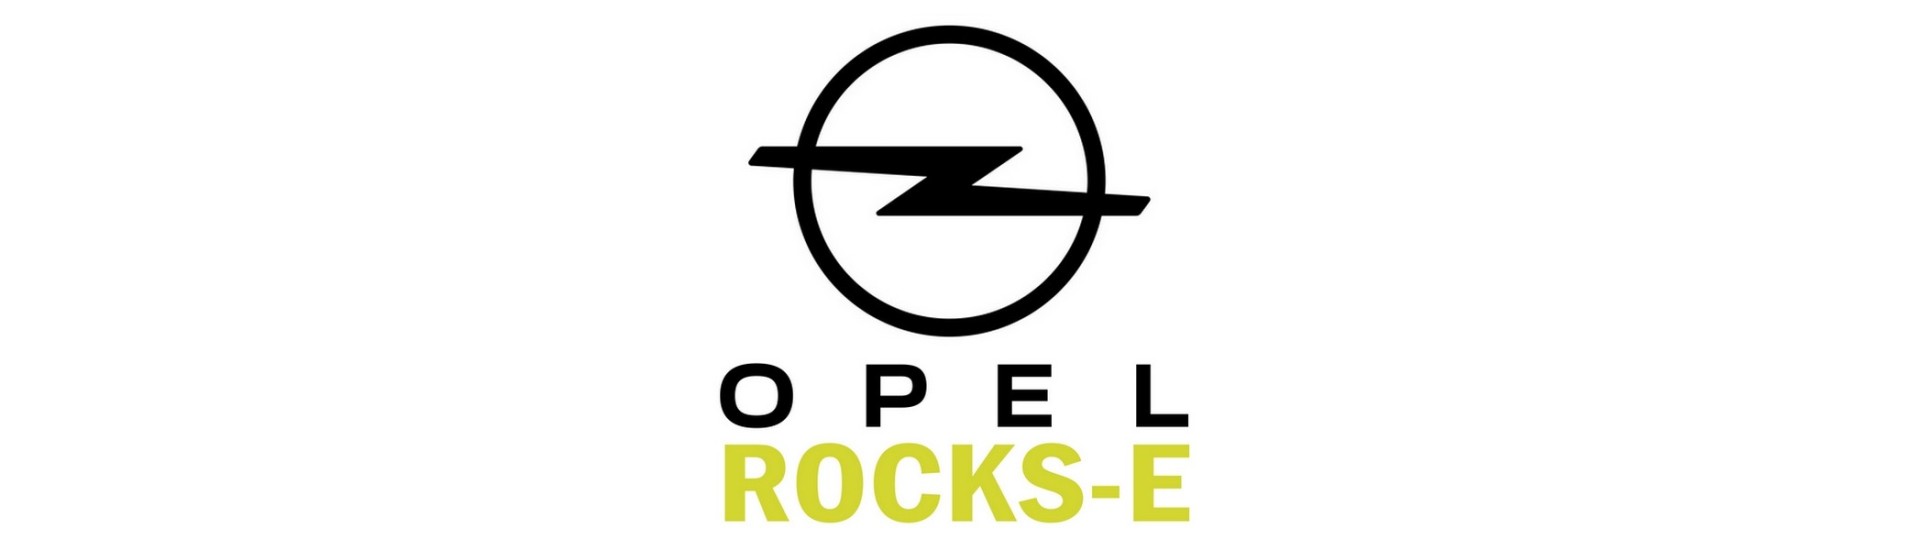 Rail de siège pour voiture sans permis Opel Rocks-E